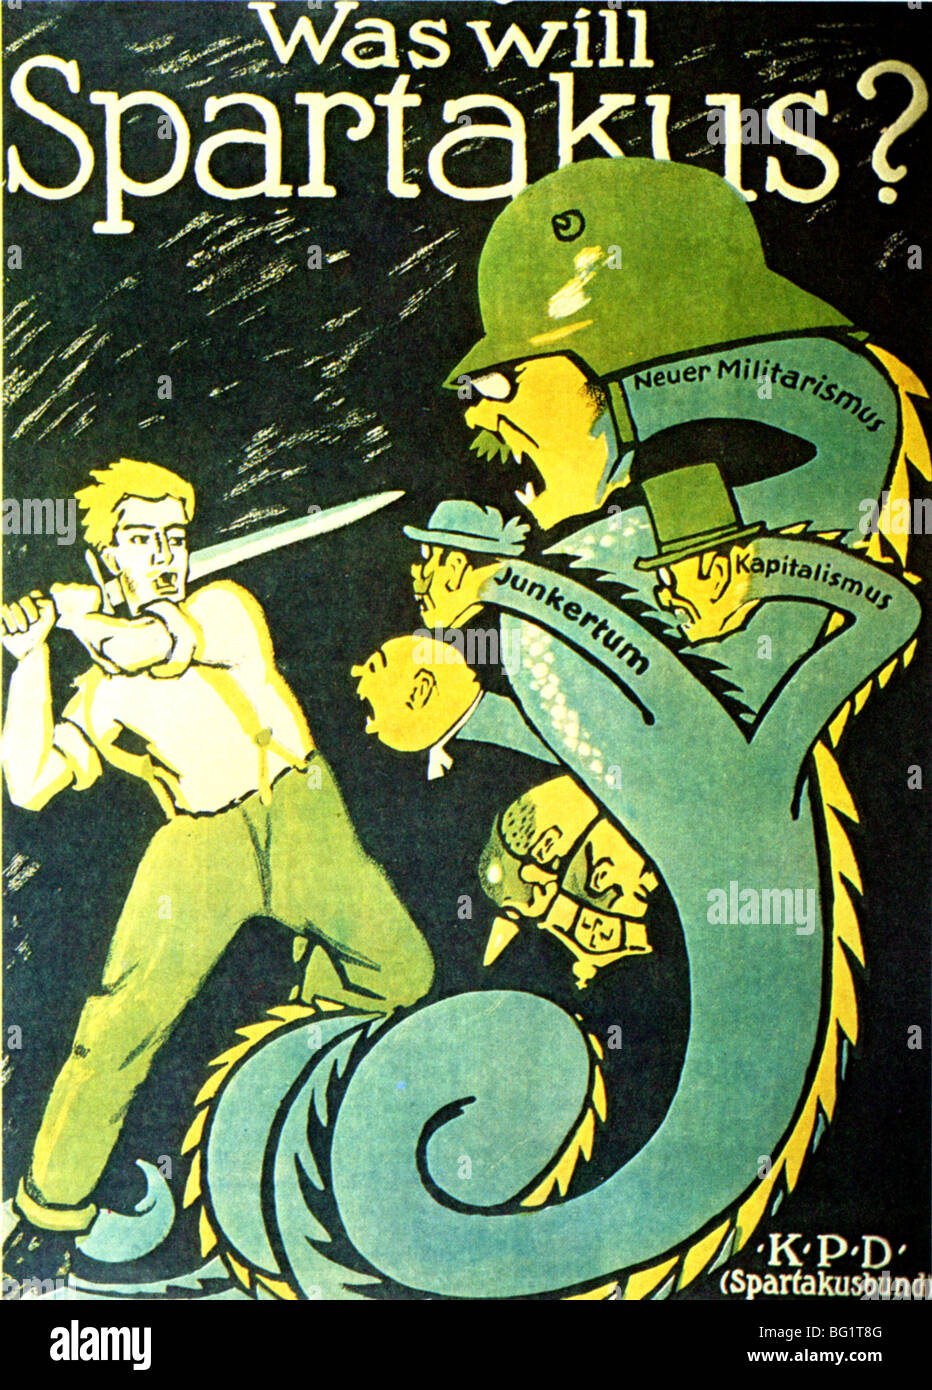 SPARTACUS  LEAGUE 1919 poster.  "What will Spartakus do ?" At lower right the initials KDP - Kommunistische Partei Deutschland. Stock Photo